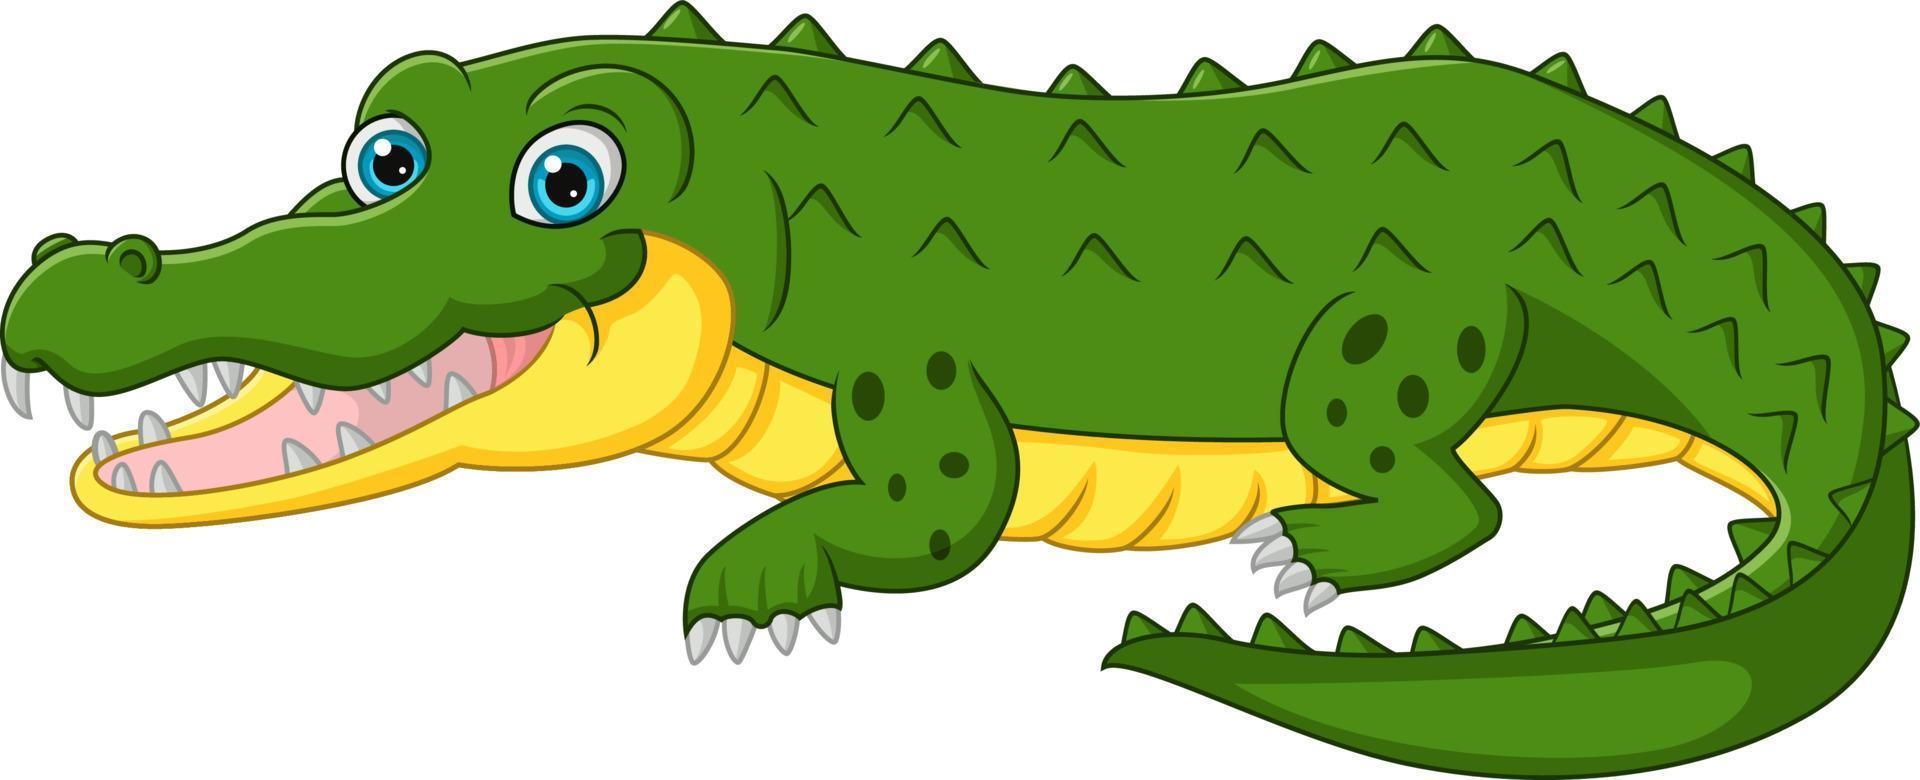 desenho de crocodilo fofo isolado no fundo branco vetor